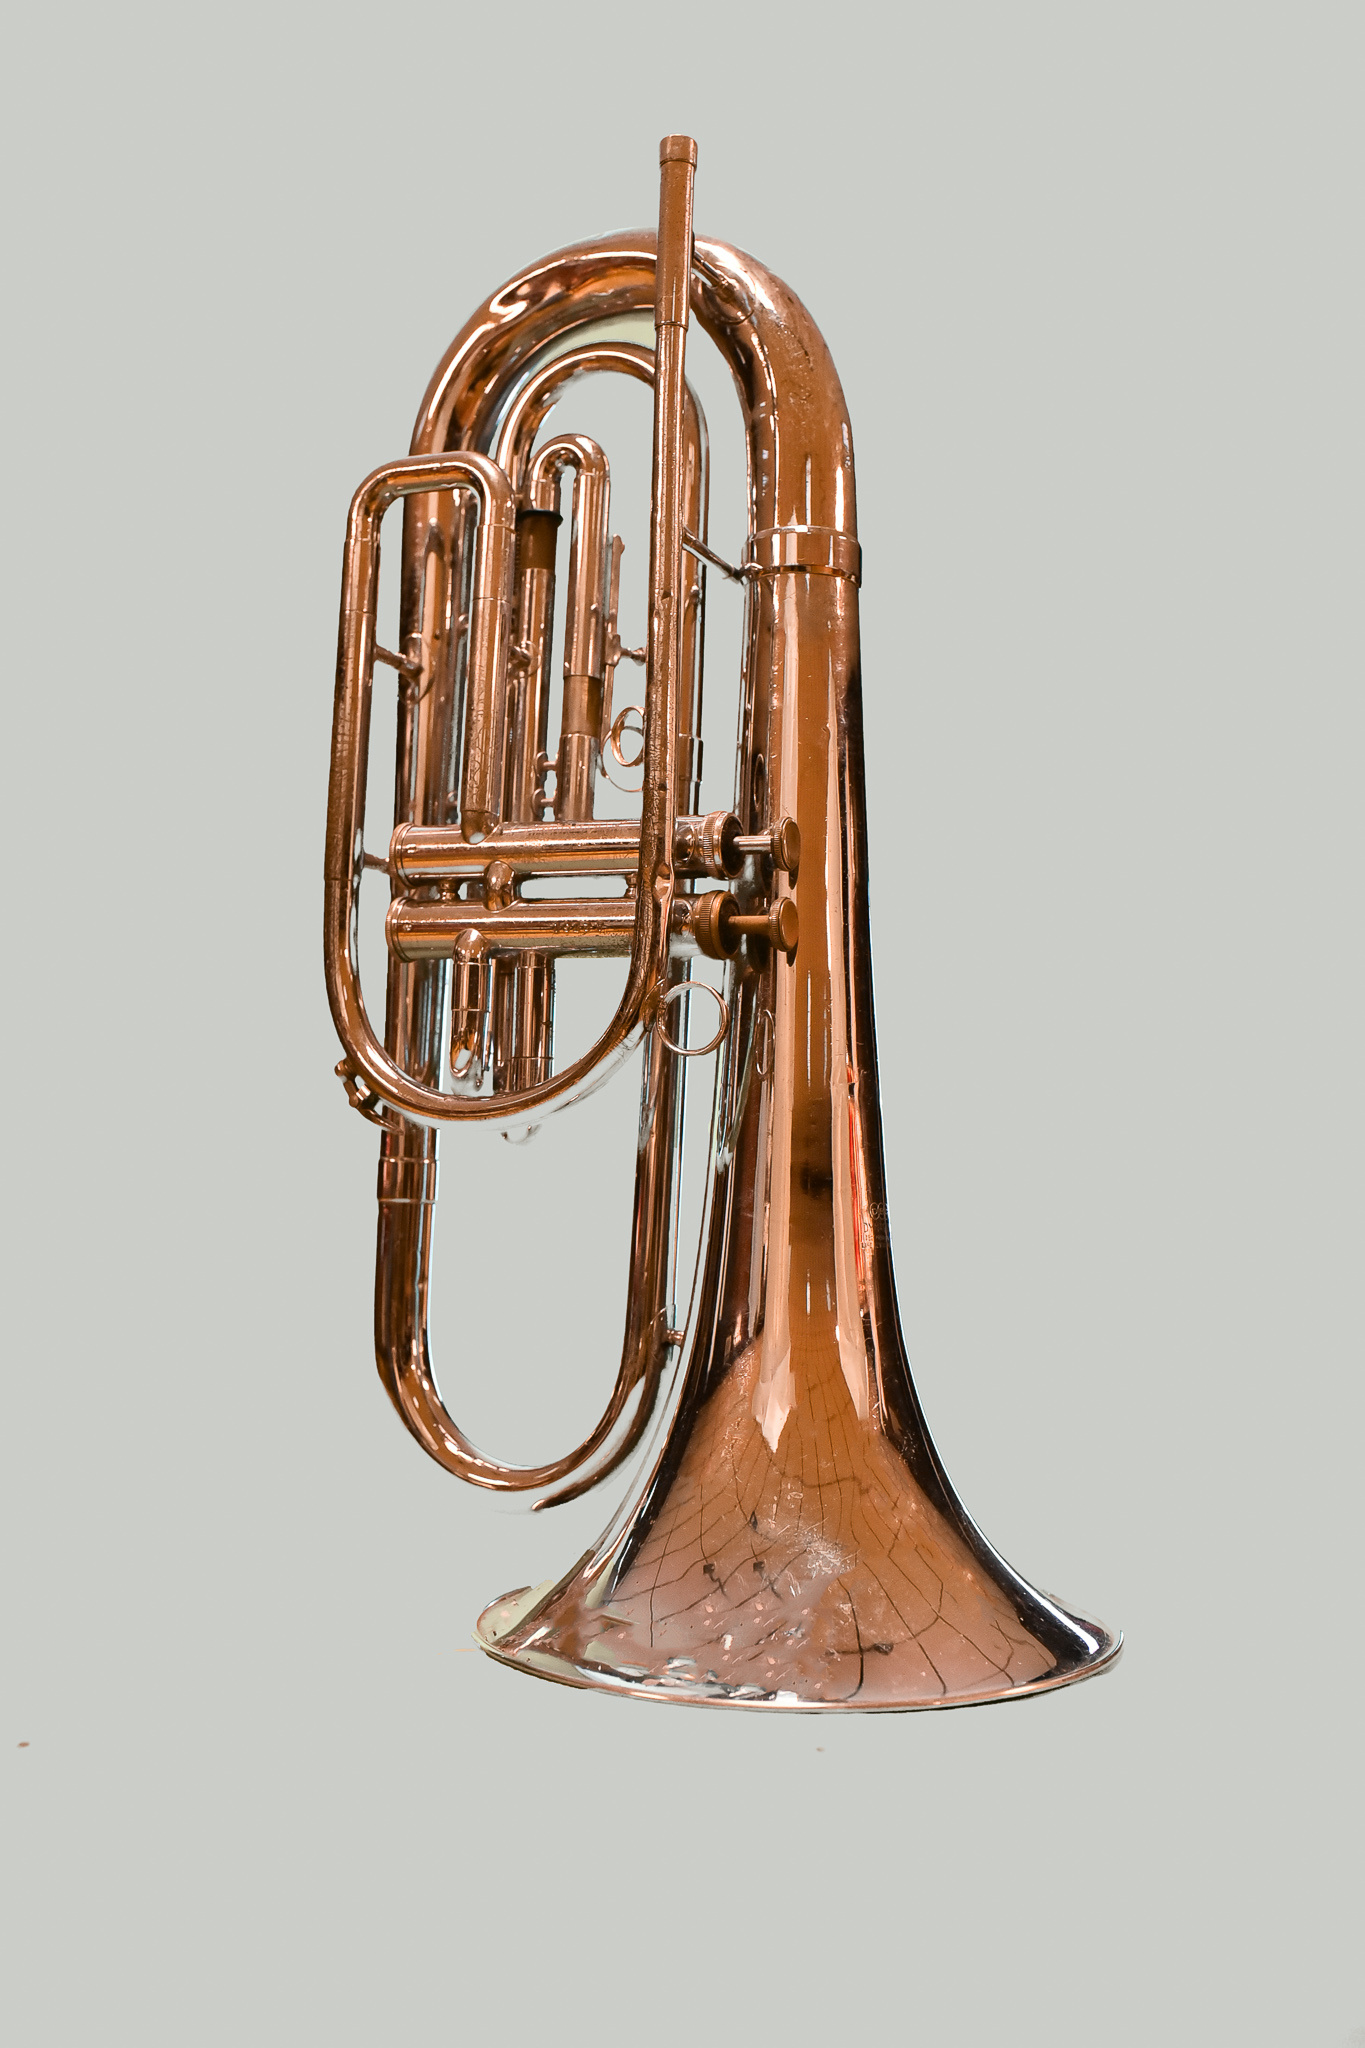 Mellophone: John Packer JP374 Sterling Euphonium, High-Grade Brass, A 12" Bell For Superior Sound Projection, Music. 1370x2050 HD Wallpaper.